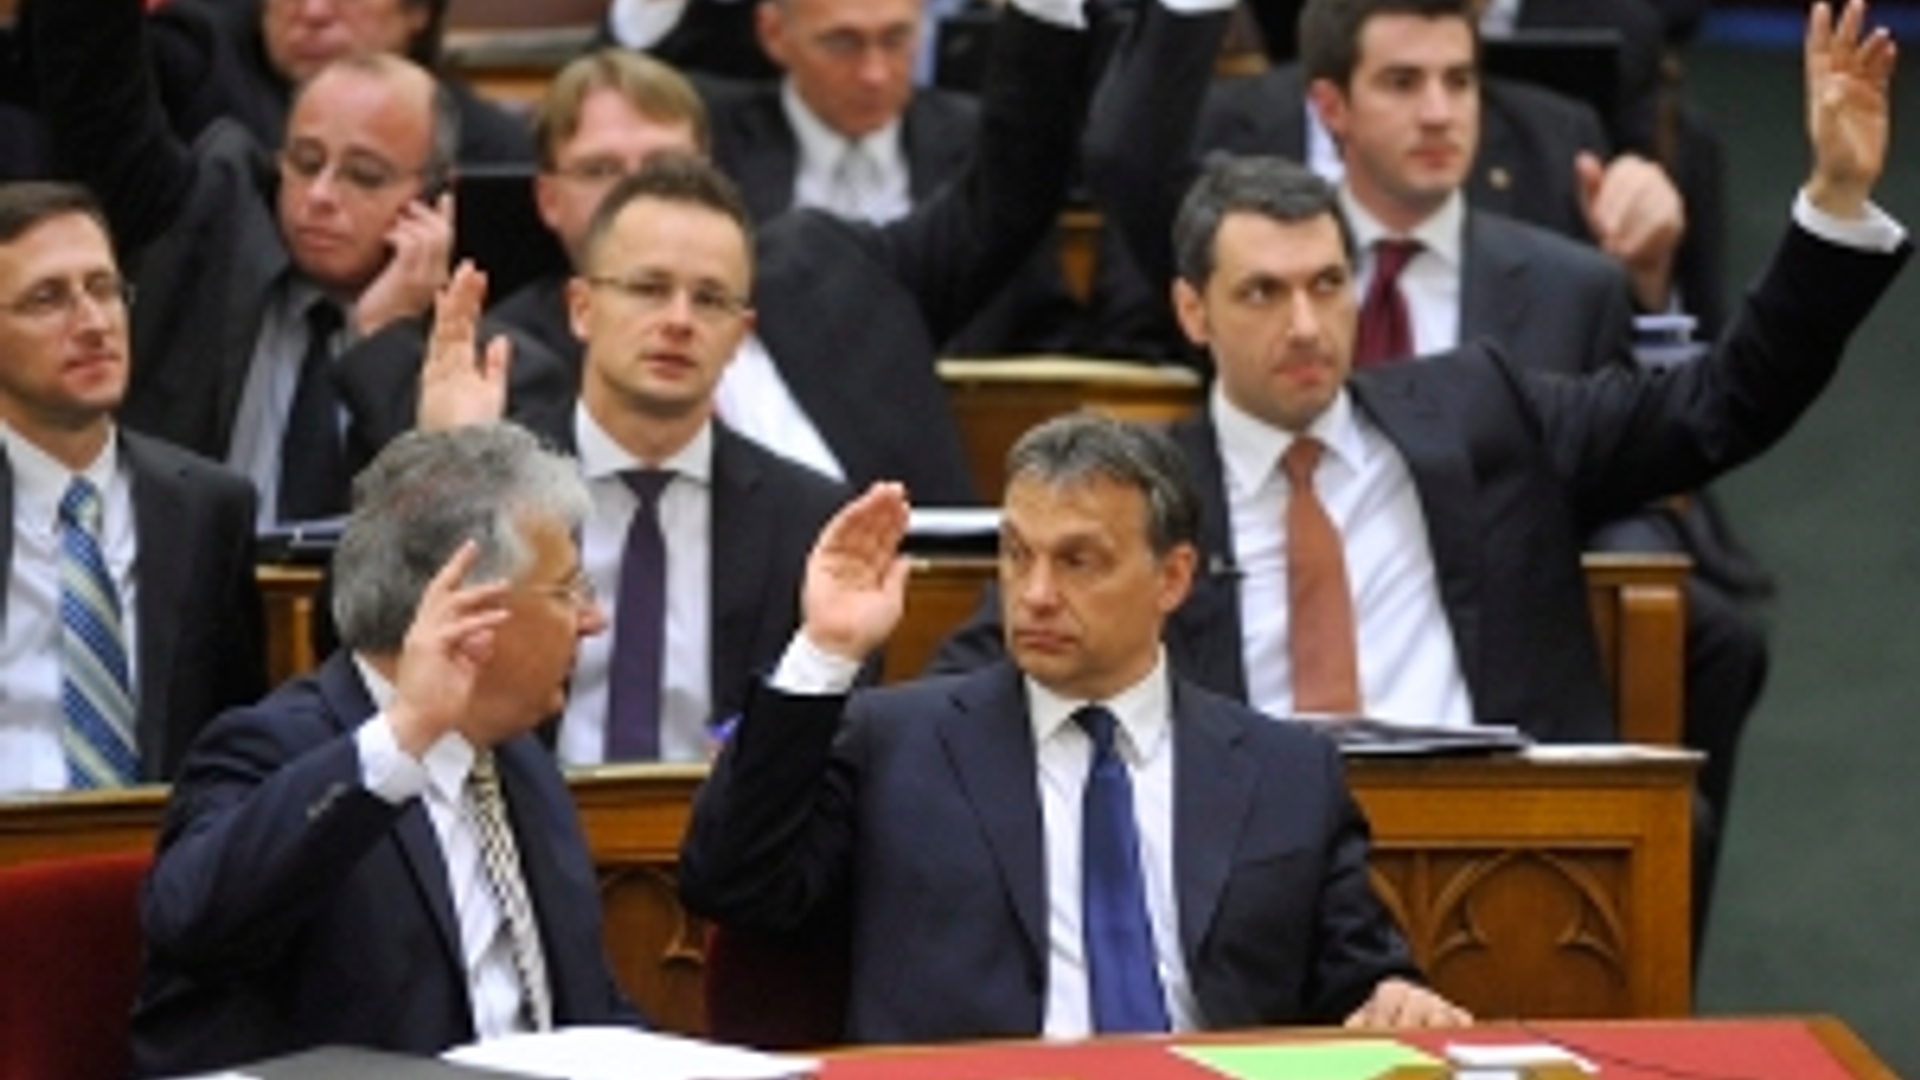 ANP-Hongarije_premier_vicepremier_parlement300.jpg